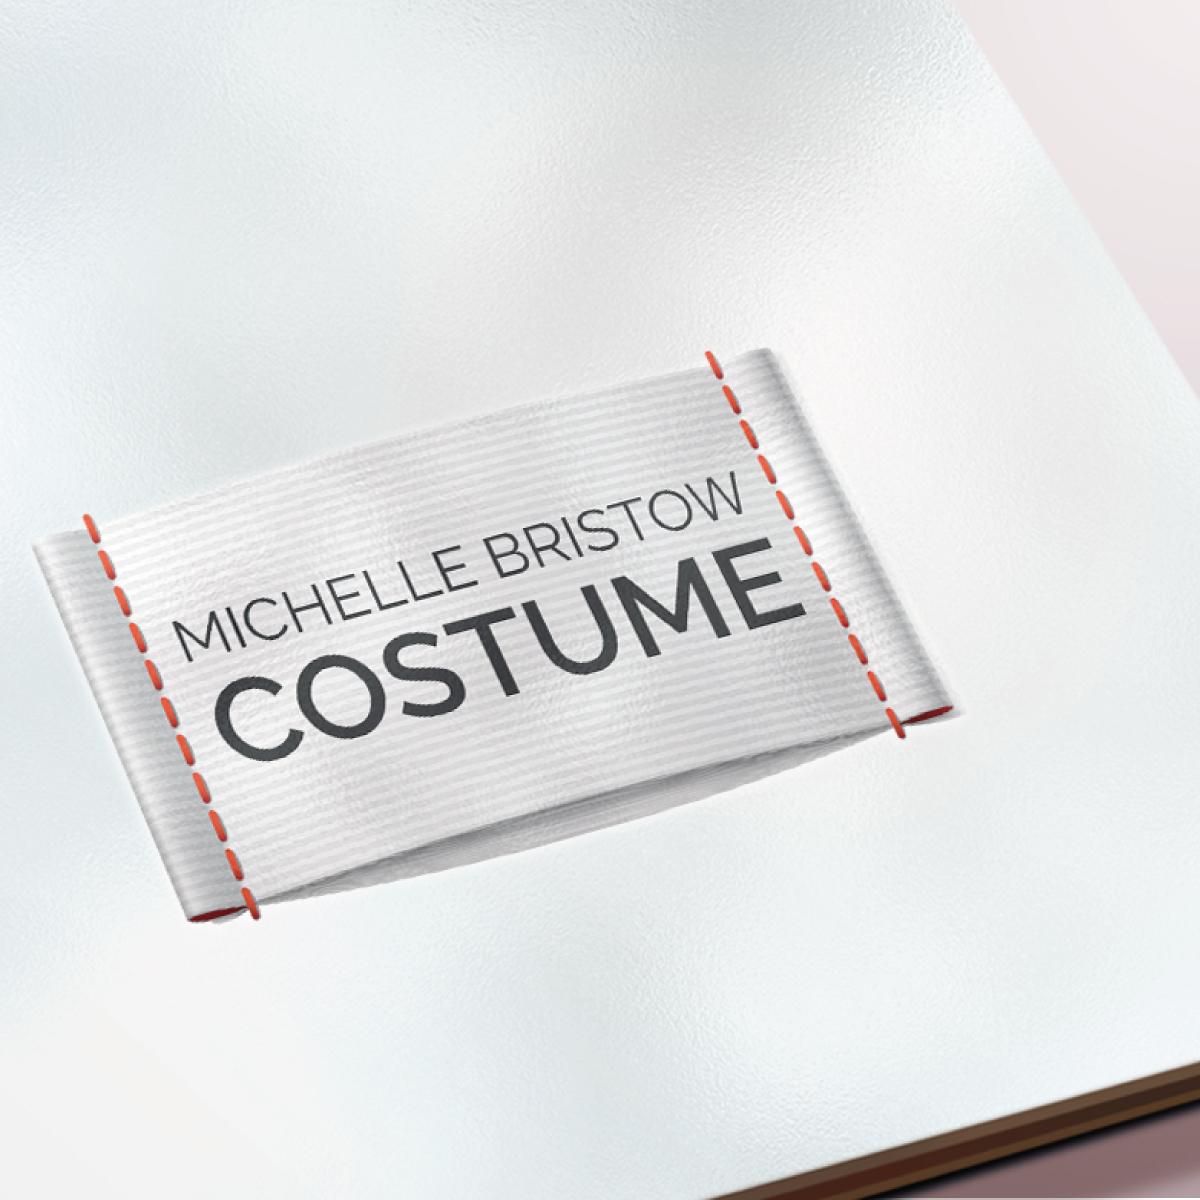 logo design for the costume design michelle bristow